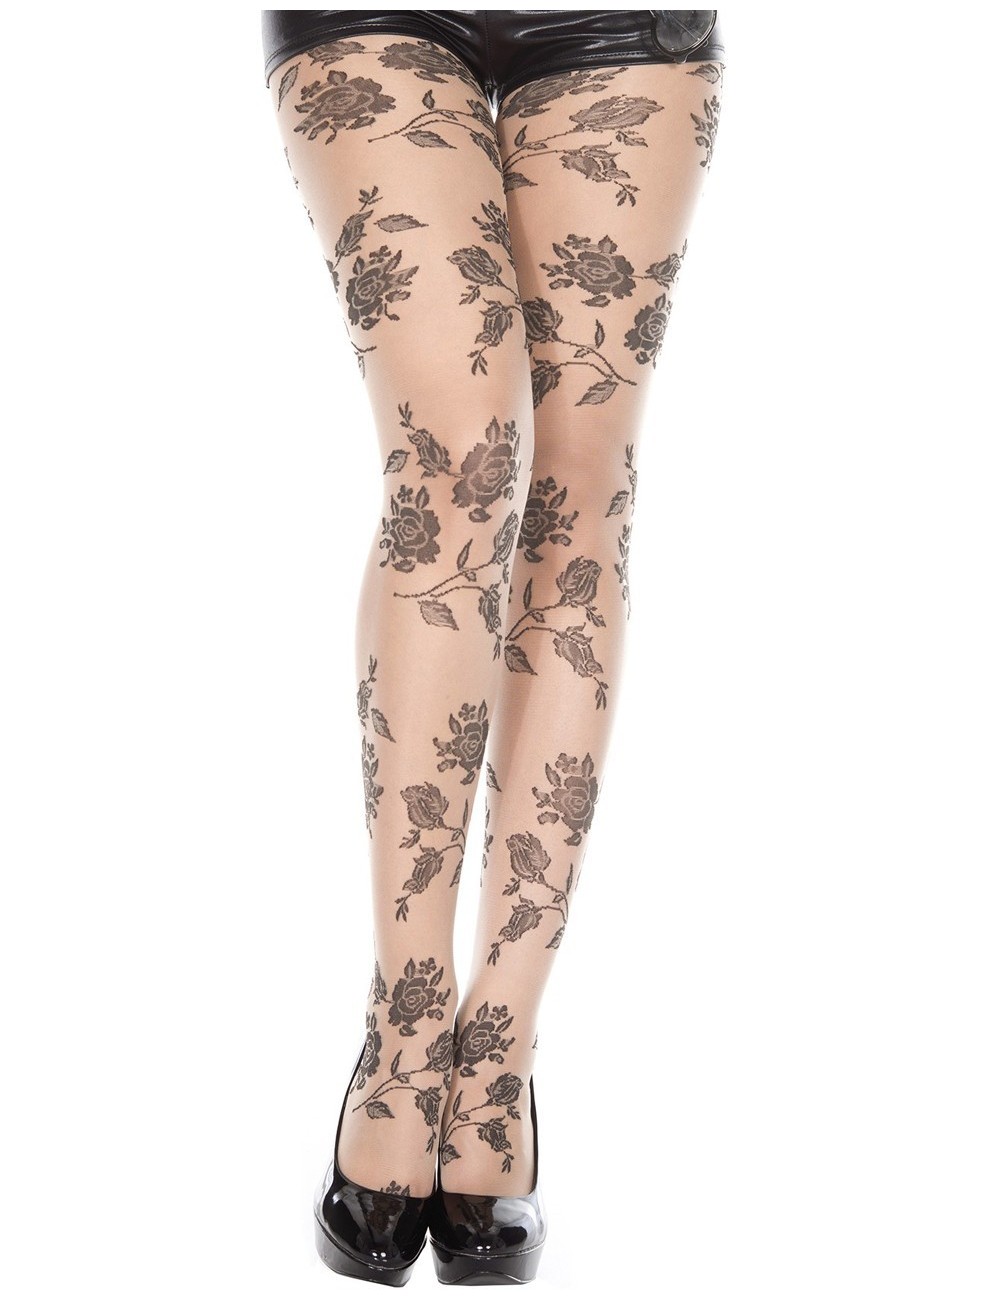 Lingerie - Collants - Collant chair fantaisie et fleurs noires - MH7095NUB - Music Legs